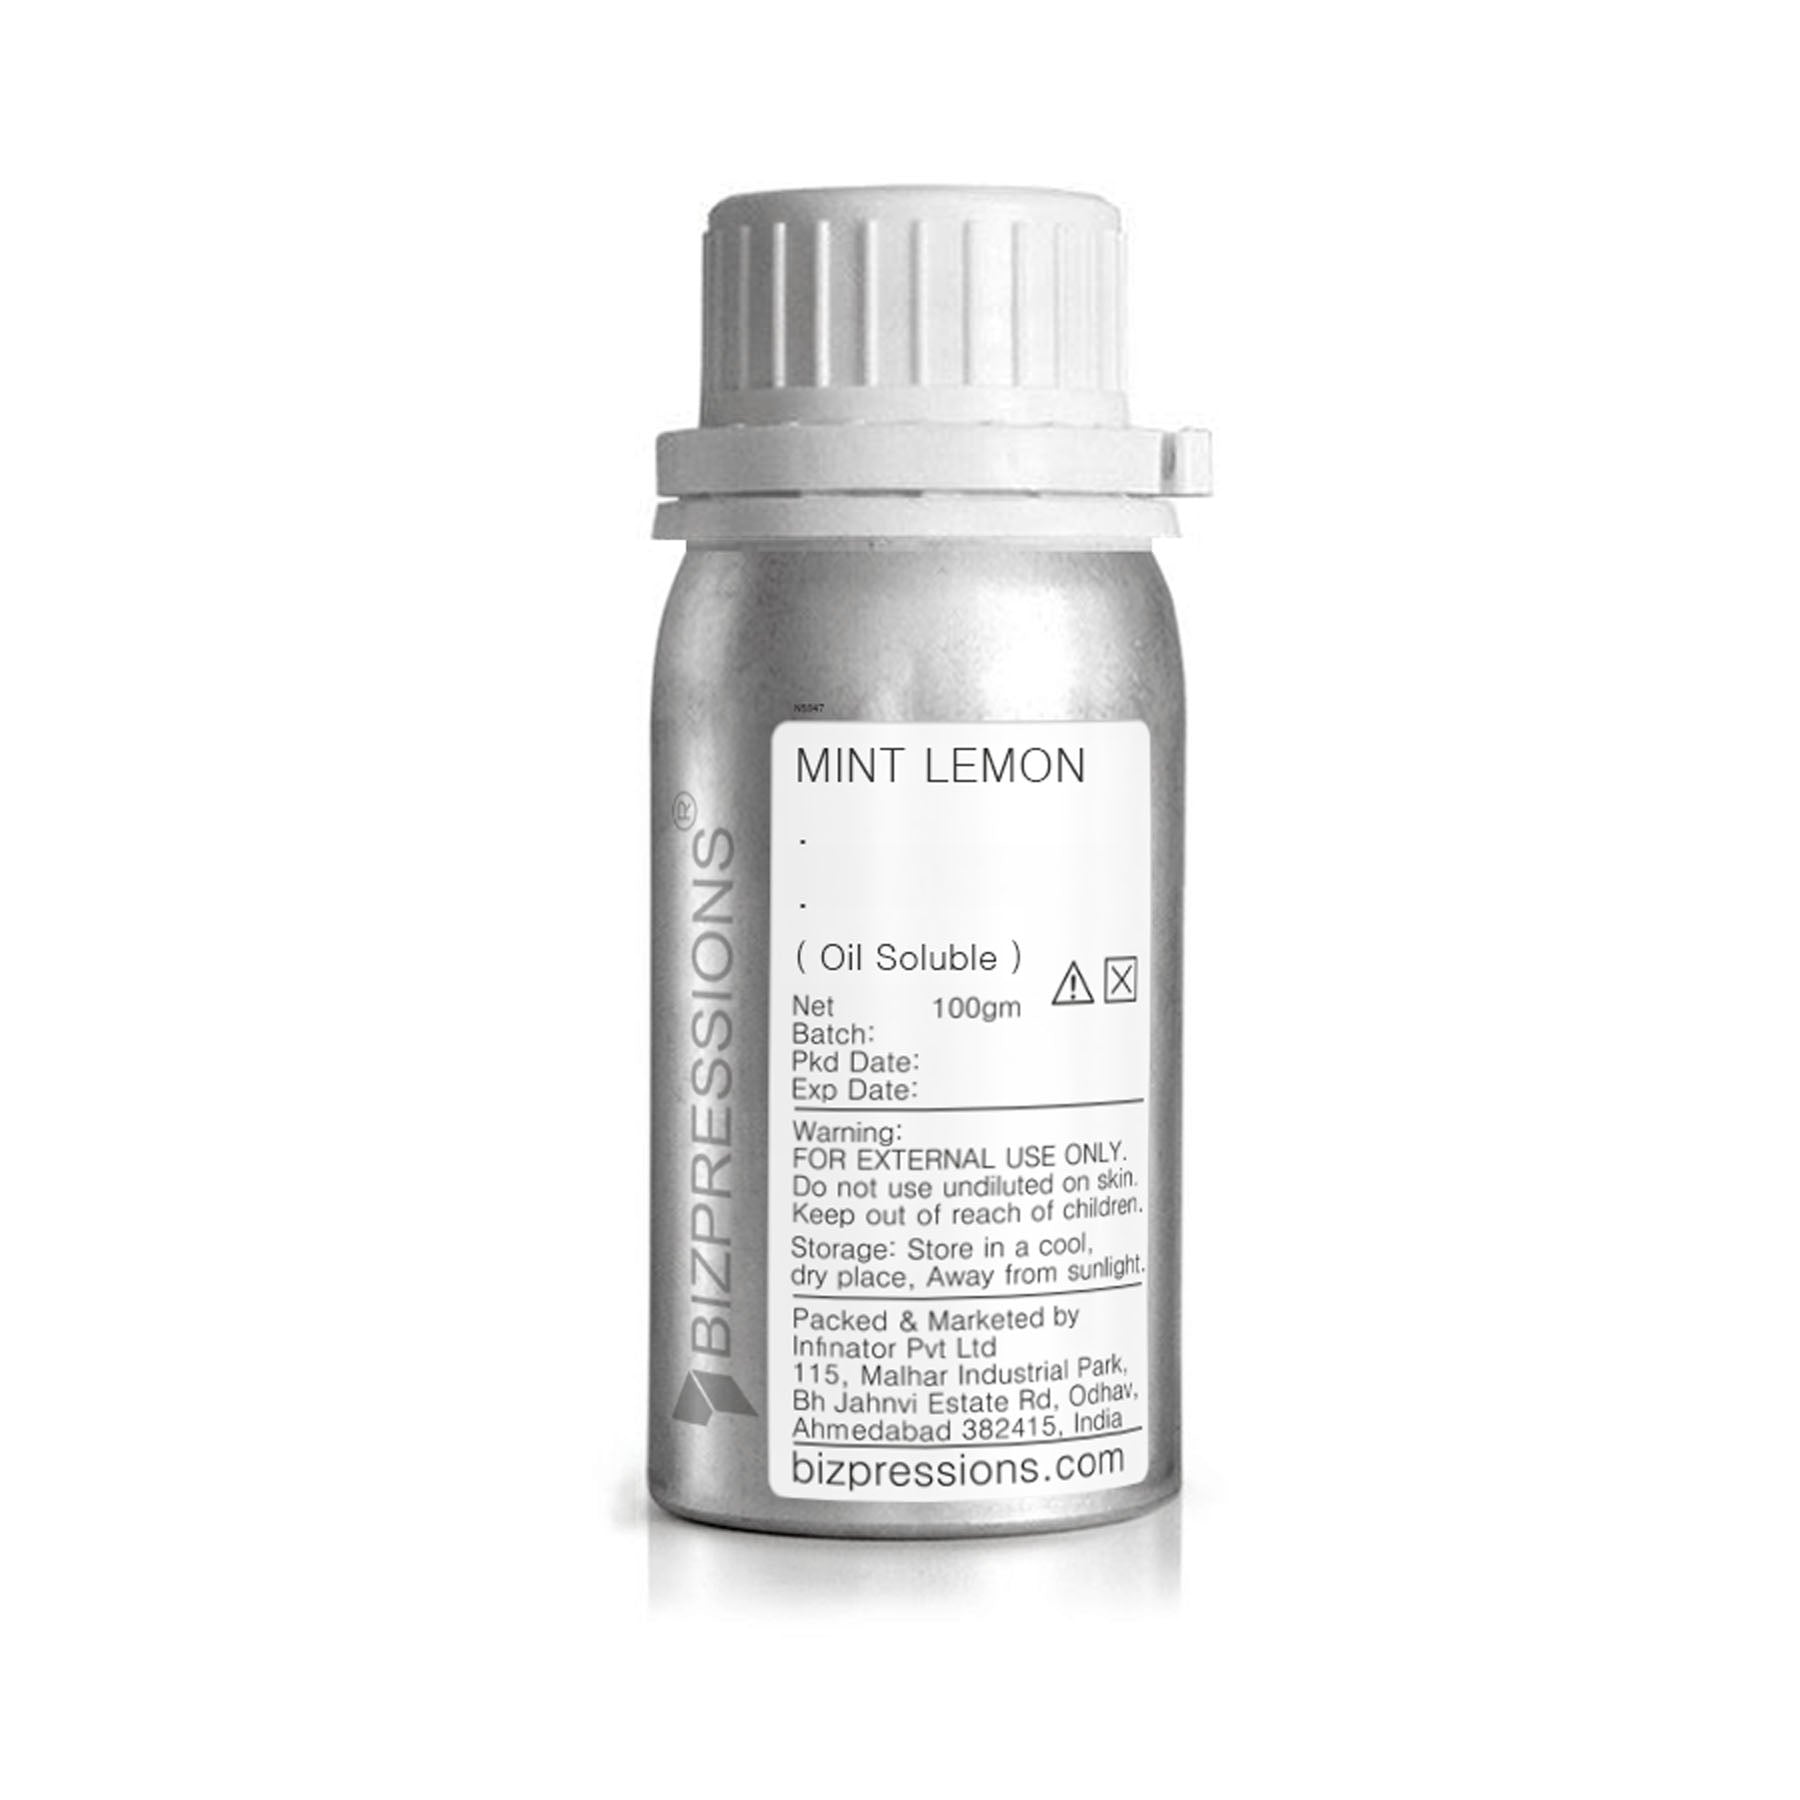 MINT LEMON - Fragrance ( Oil Soluble ) - 100 gm